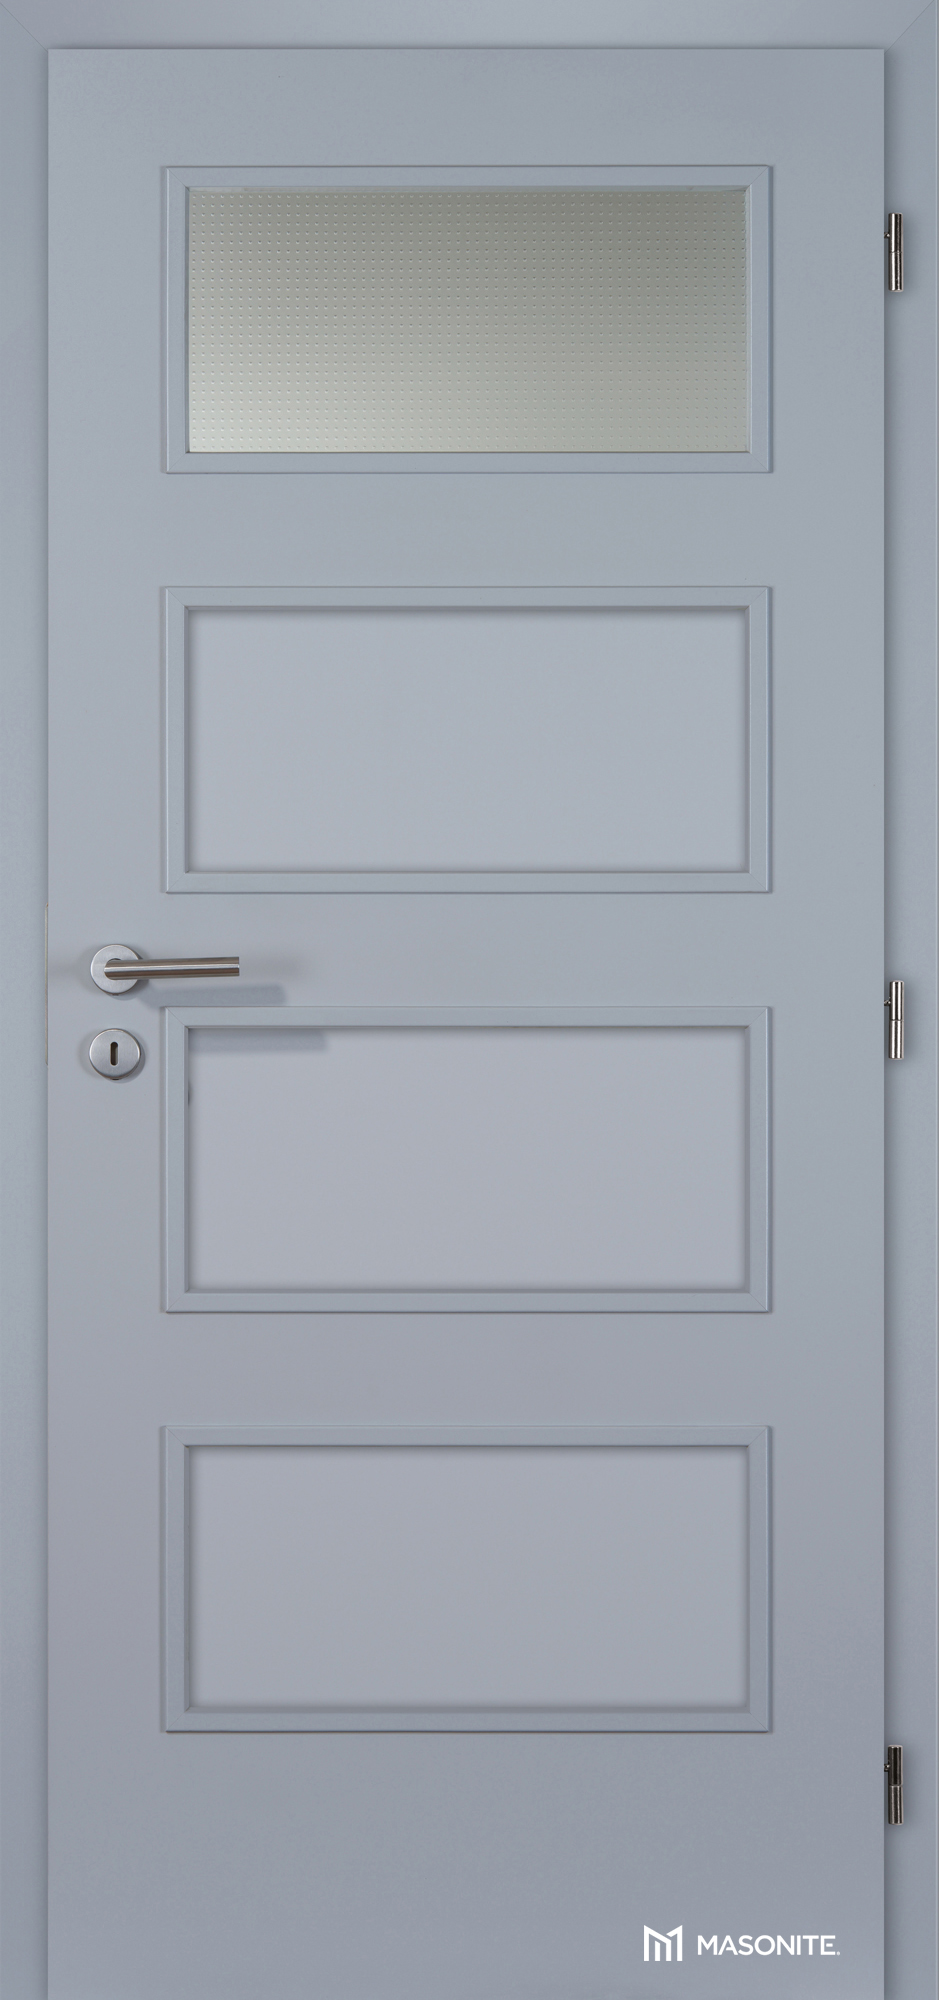 Dveře DTD DOMINANT 1x piskované sklo CPL šedá